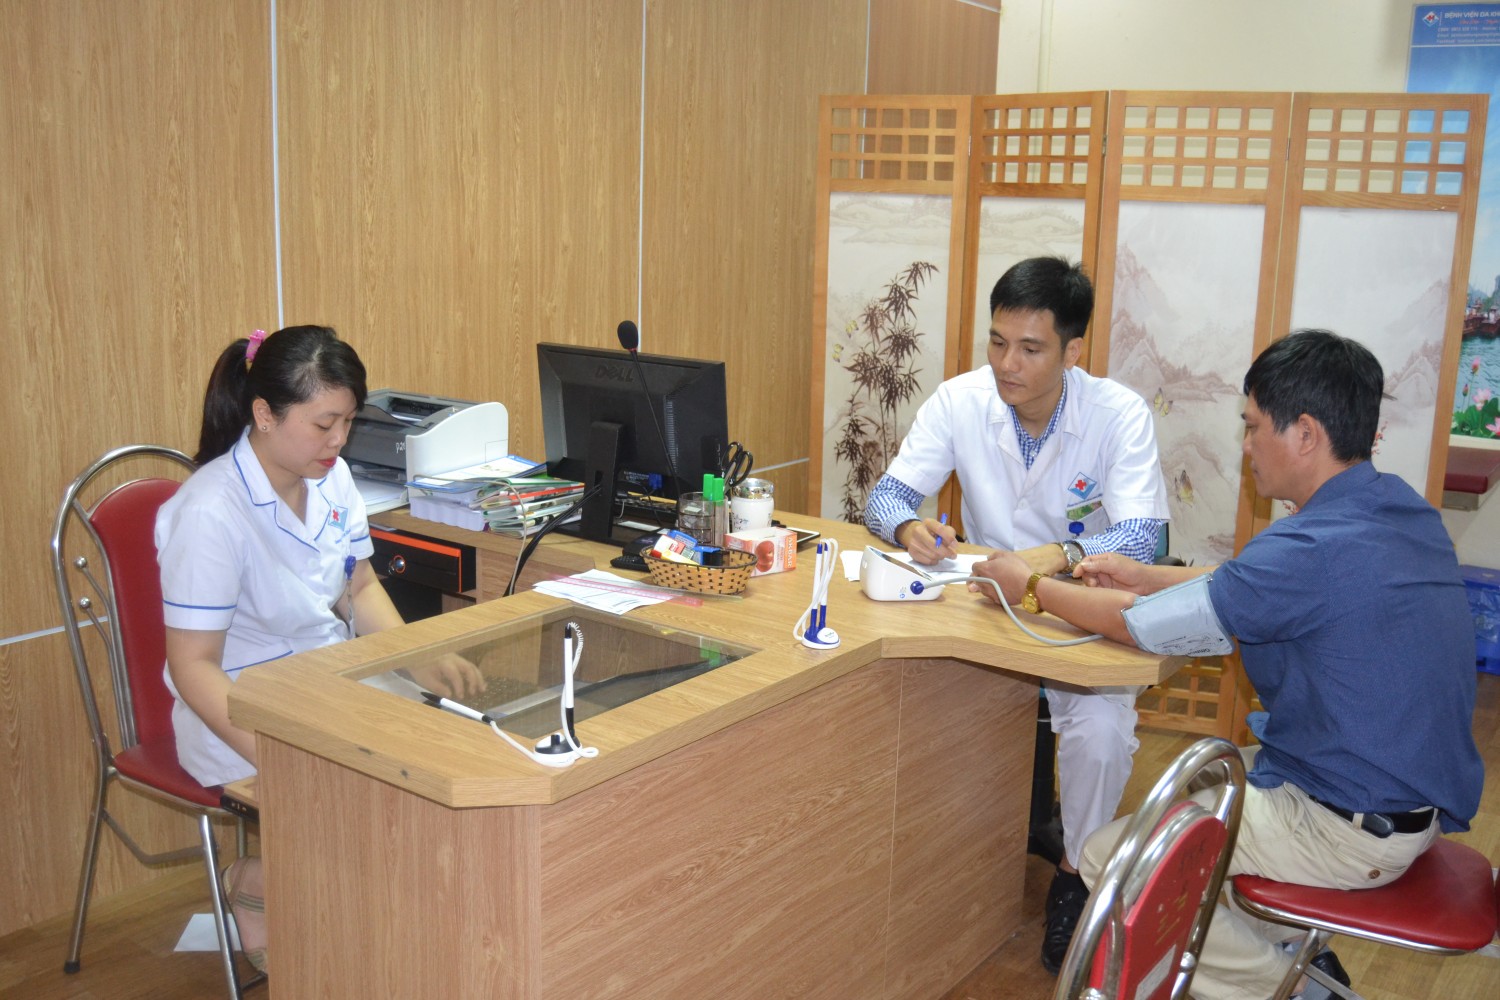 Khám sức khỏe định kỳ cho cán bộ xã Tri Phú, Thị trấn Vĩnh Lộc - Chiêm Hóa tỉnh Tuyên Quang.